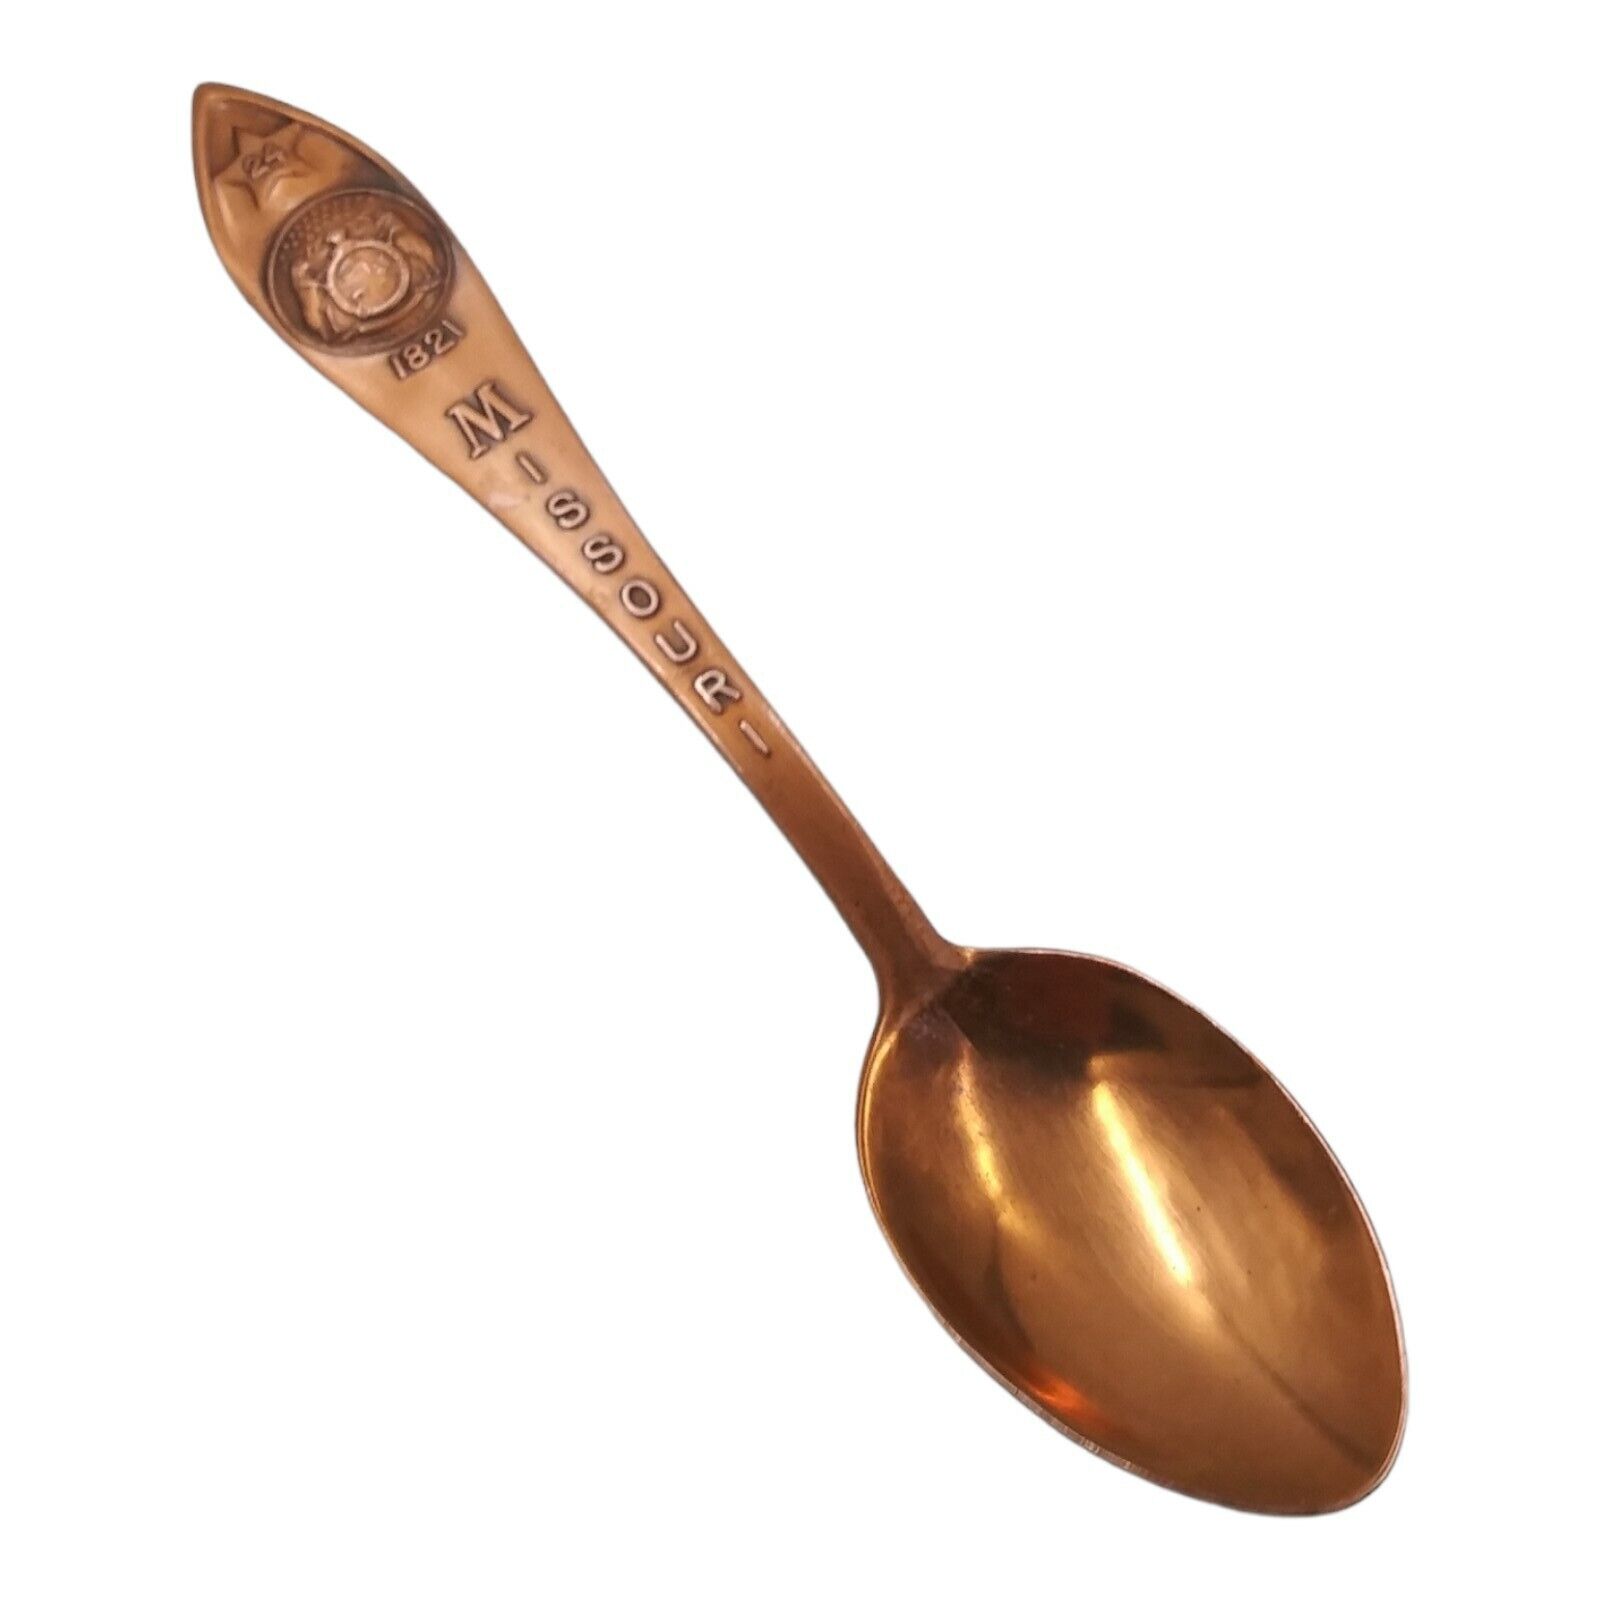 Vintage Missouri Souvenir Spoon US State Collectible Copper